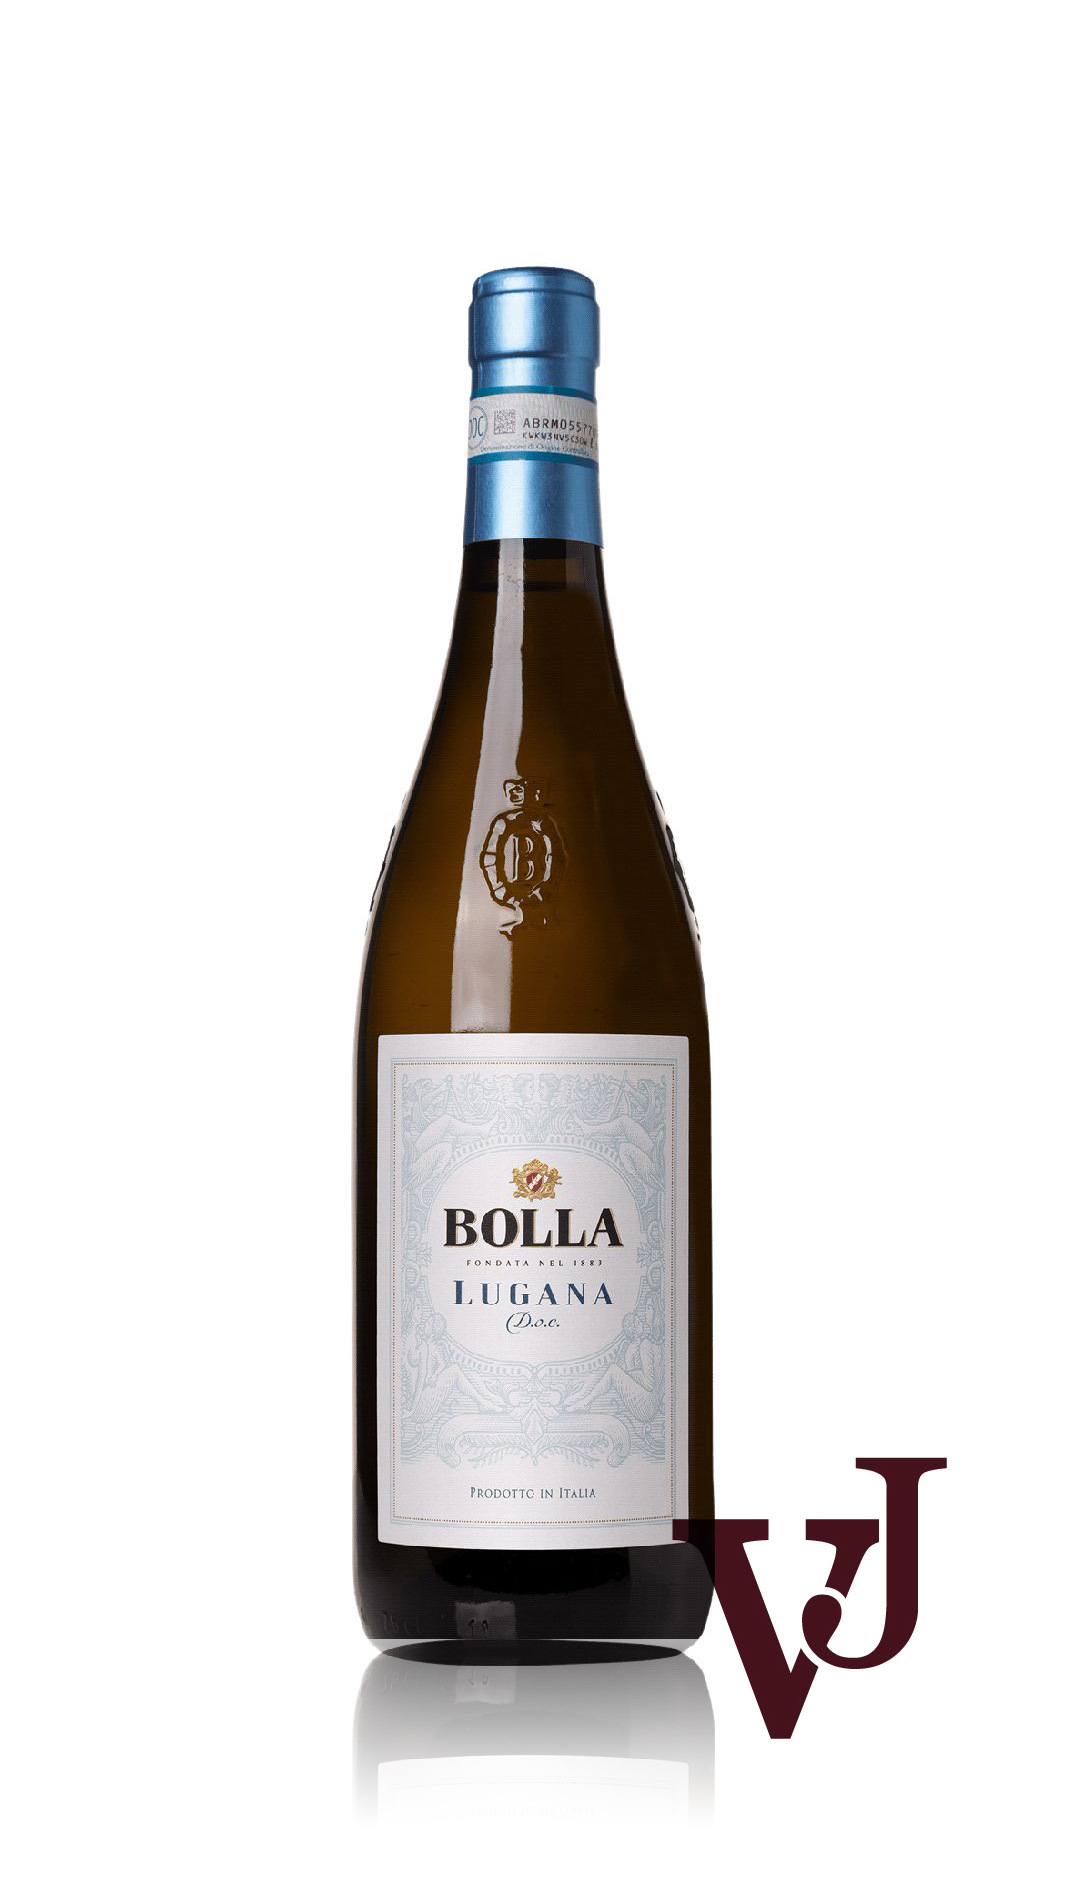 Vitt Vin - Bolla Lugana artikel nummer 5305101 från producenten Bolla från området Italien